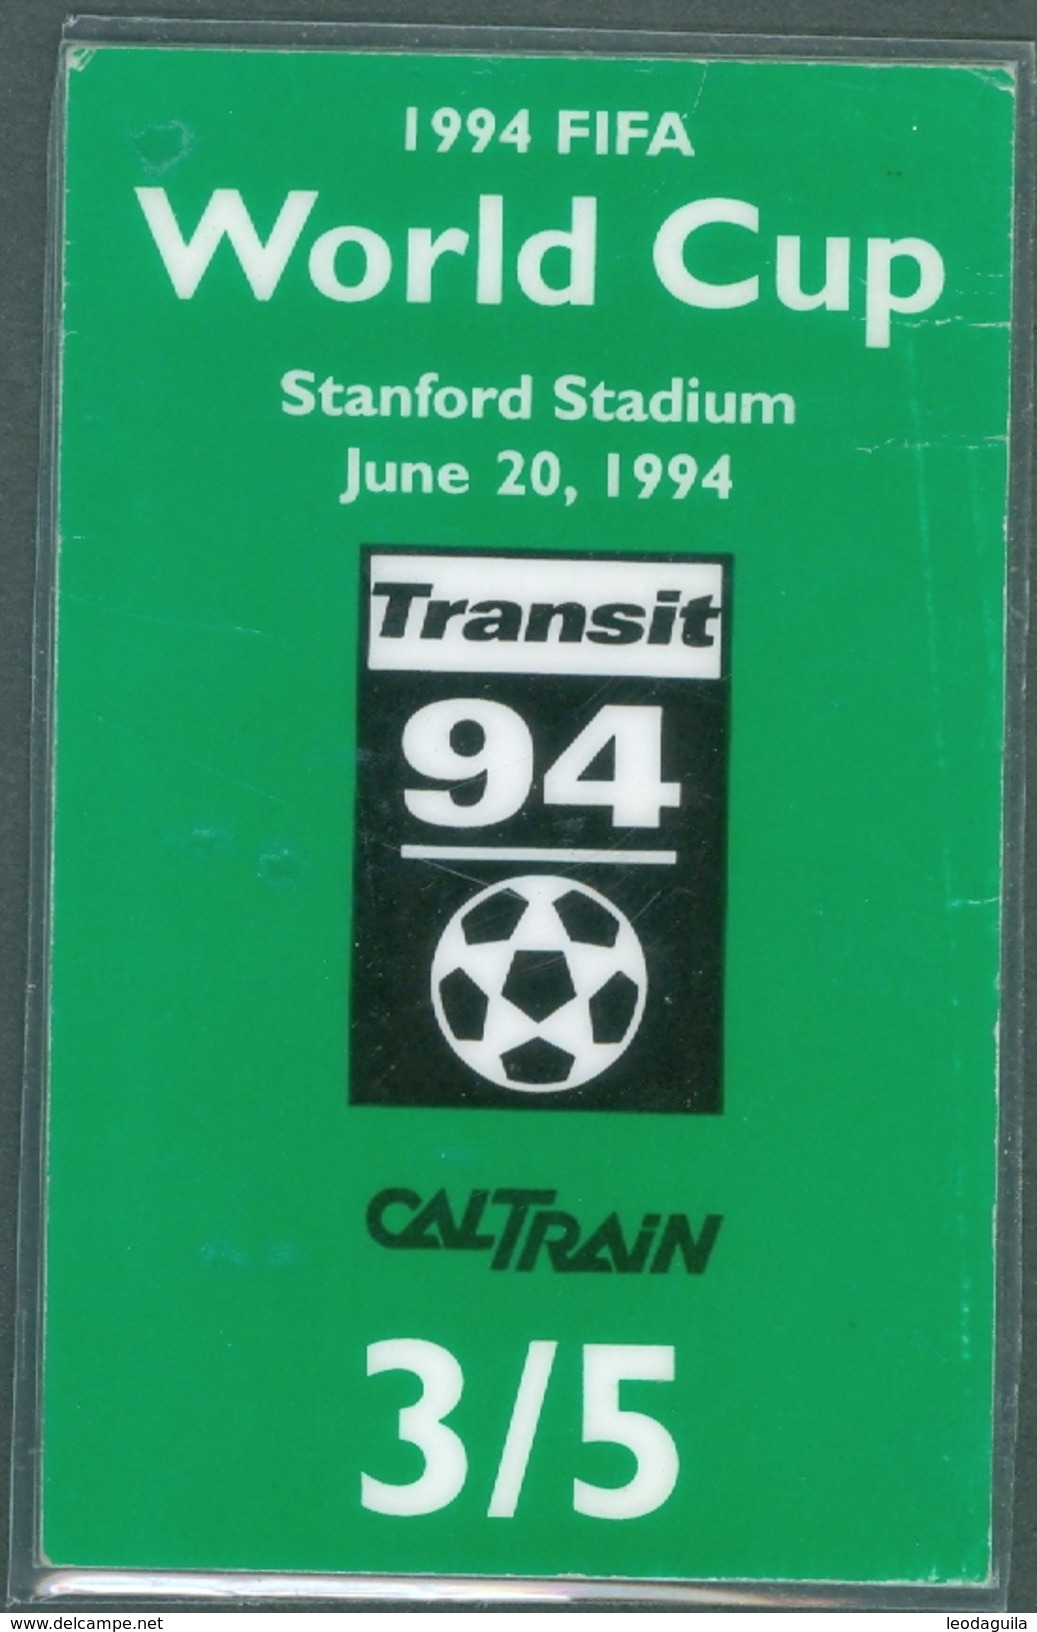 RAILWAY TICKET  -   CALTRAIN TICKET TO STANFORD STADIUM - USA  - FIFA WORLD CUP 1994 - Mundo